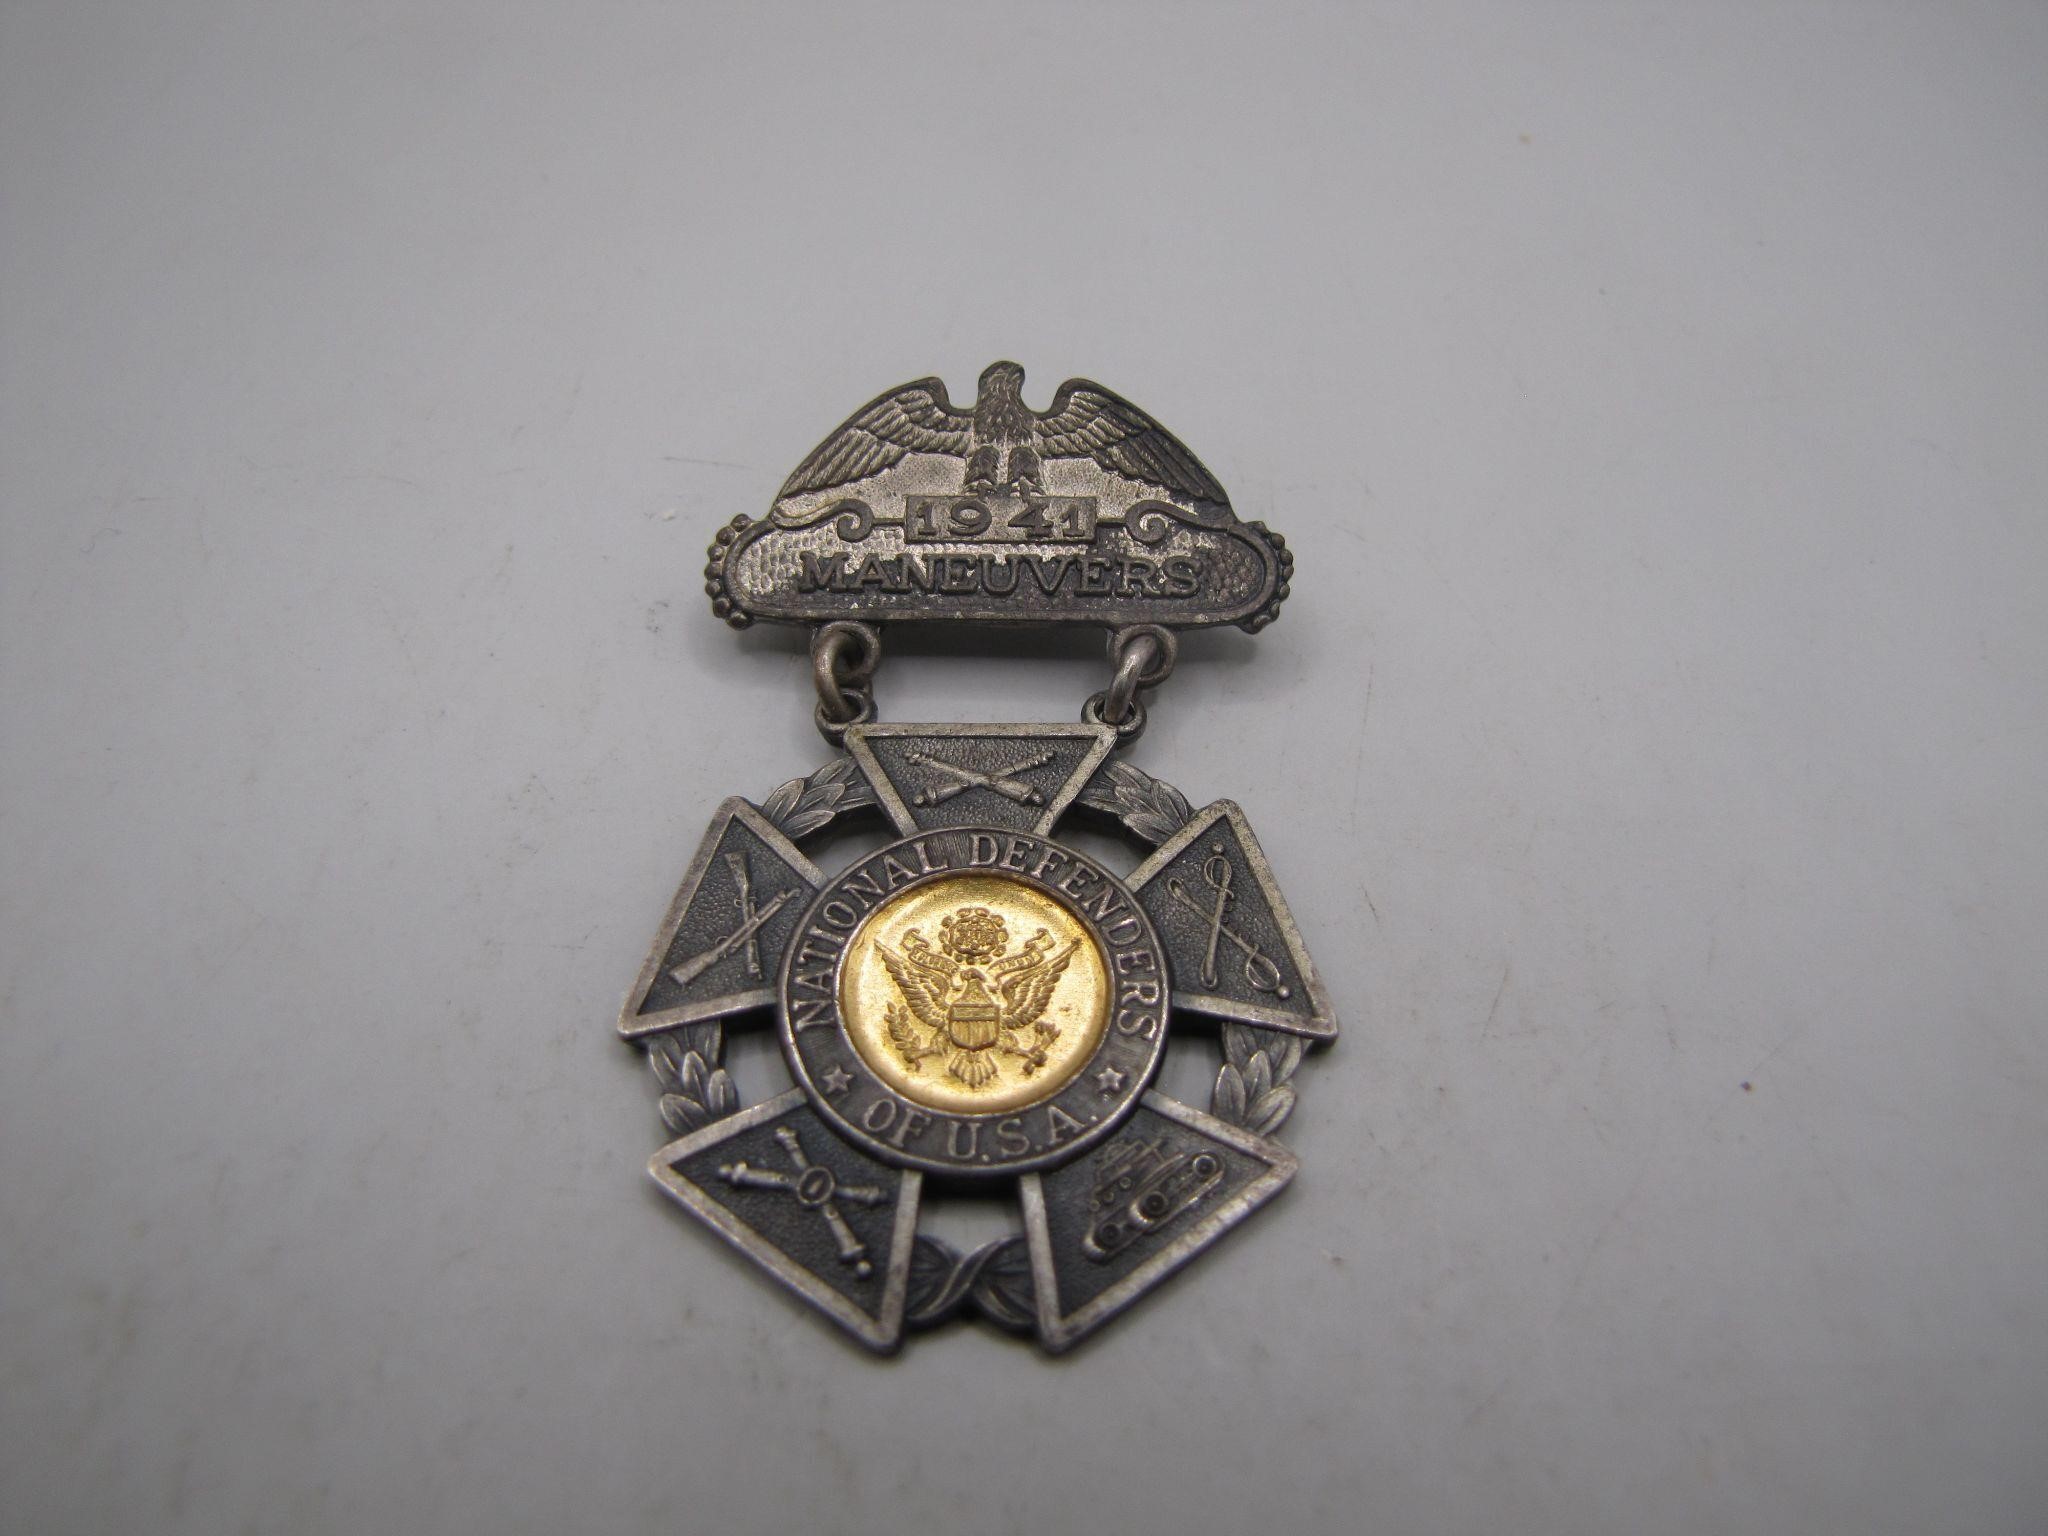 1941 Maneuvers National Defenders Pin/Badge